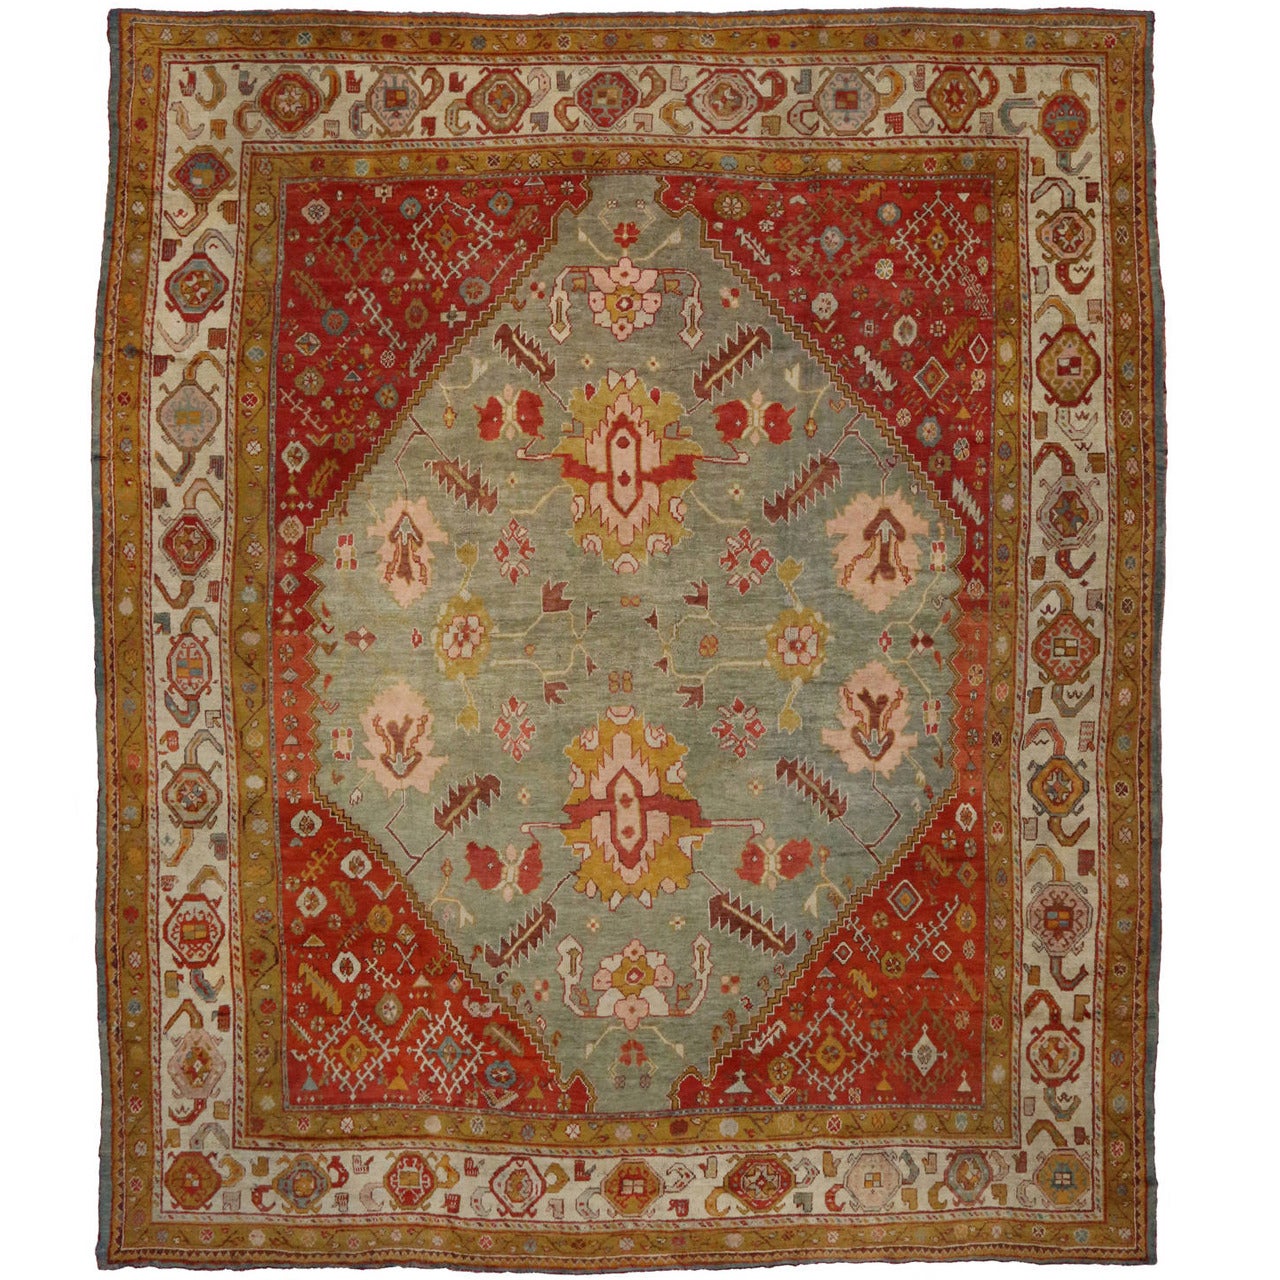 1870s Oversized Antique Turkish Oushak Rug, Hotel Lobby Size Carpet For Sale